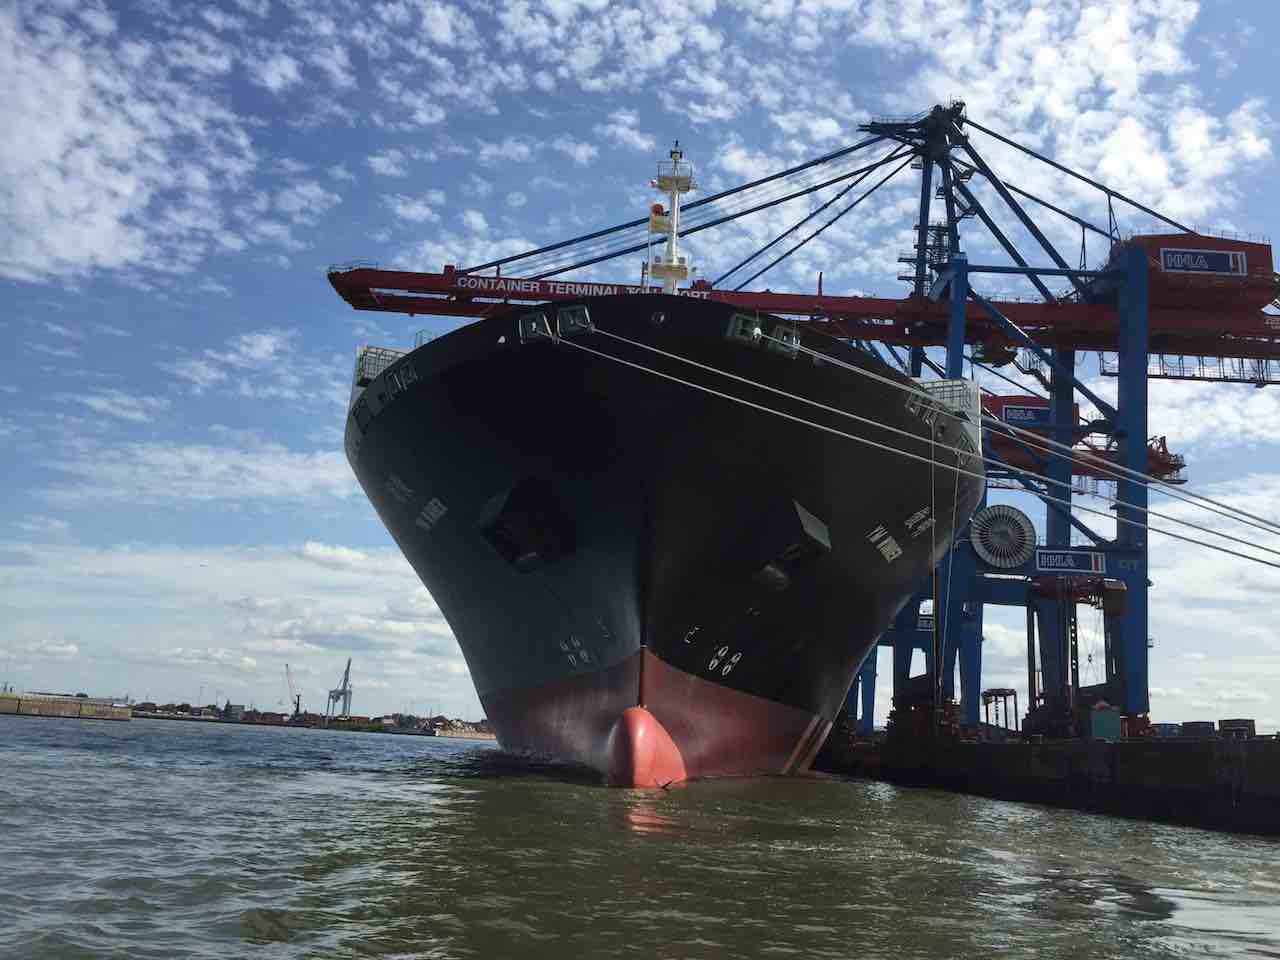 Hamburg Sehenswürdigkeiten: Containerterminal im Hafen